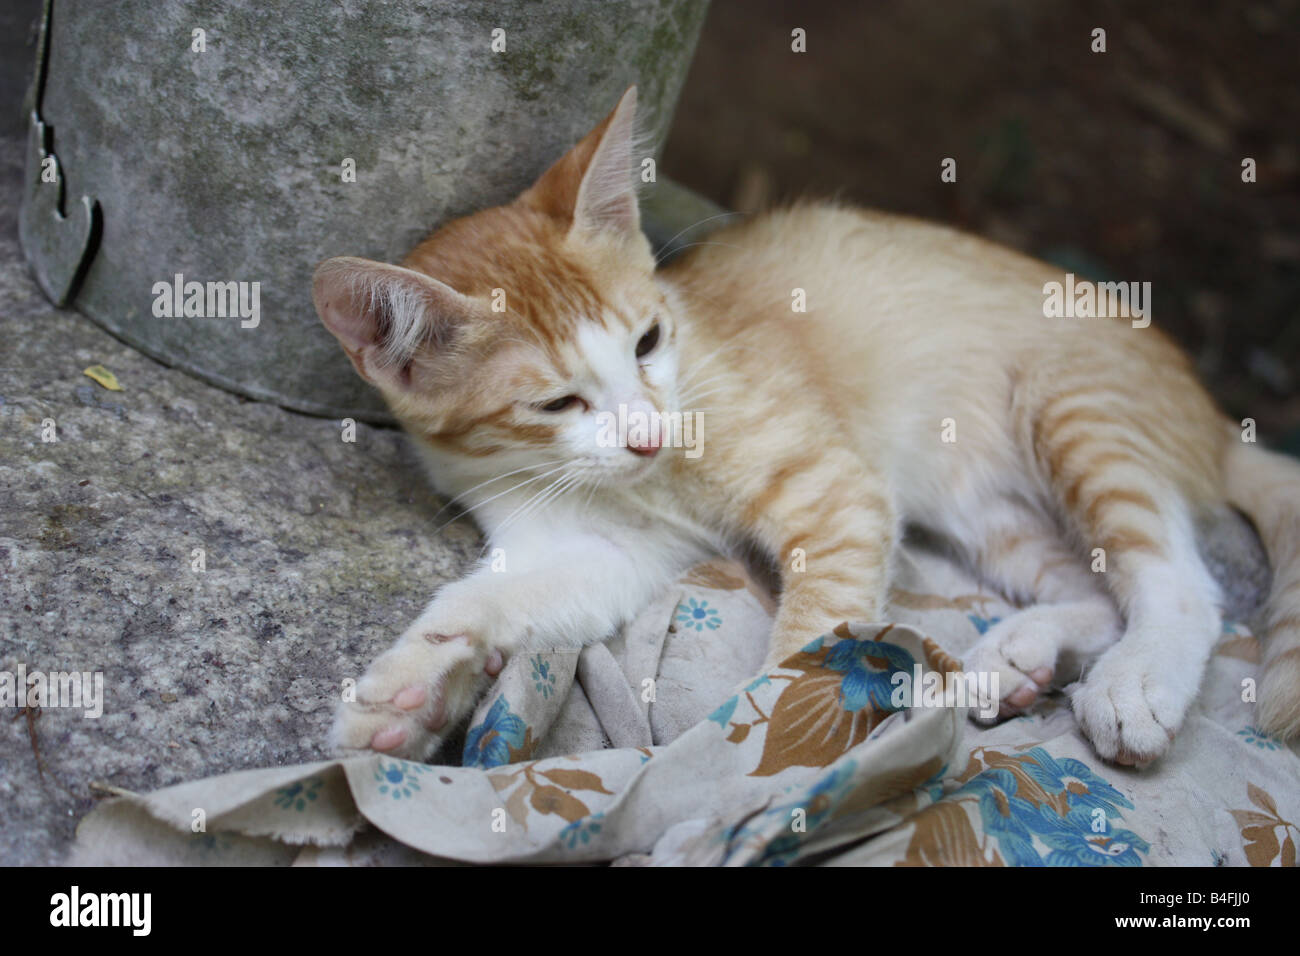 A cute kitten lying in a sleepy mood Stock Photo